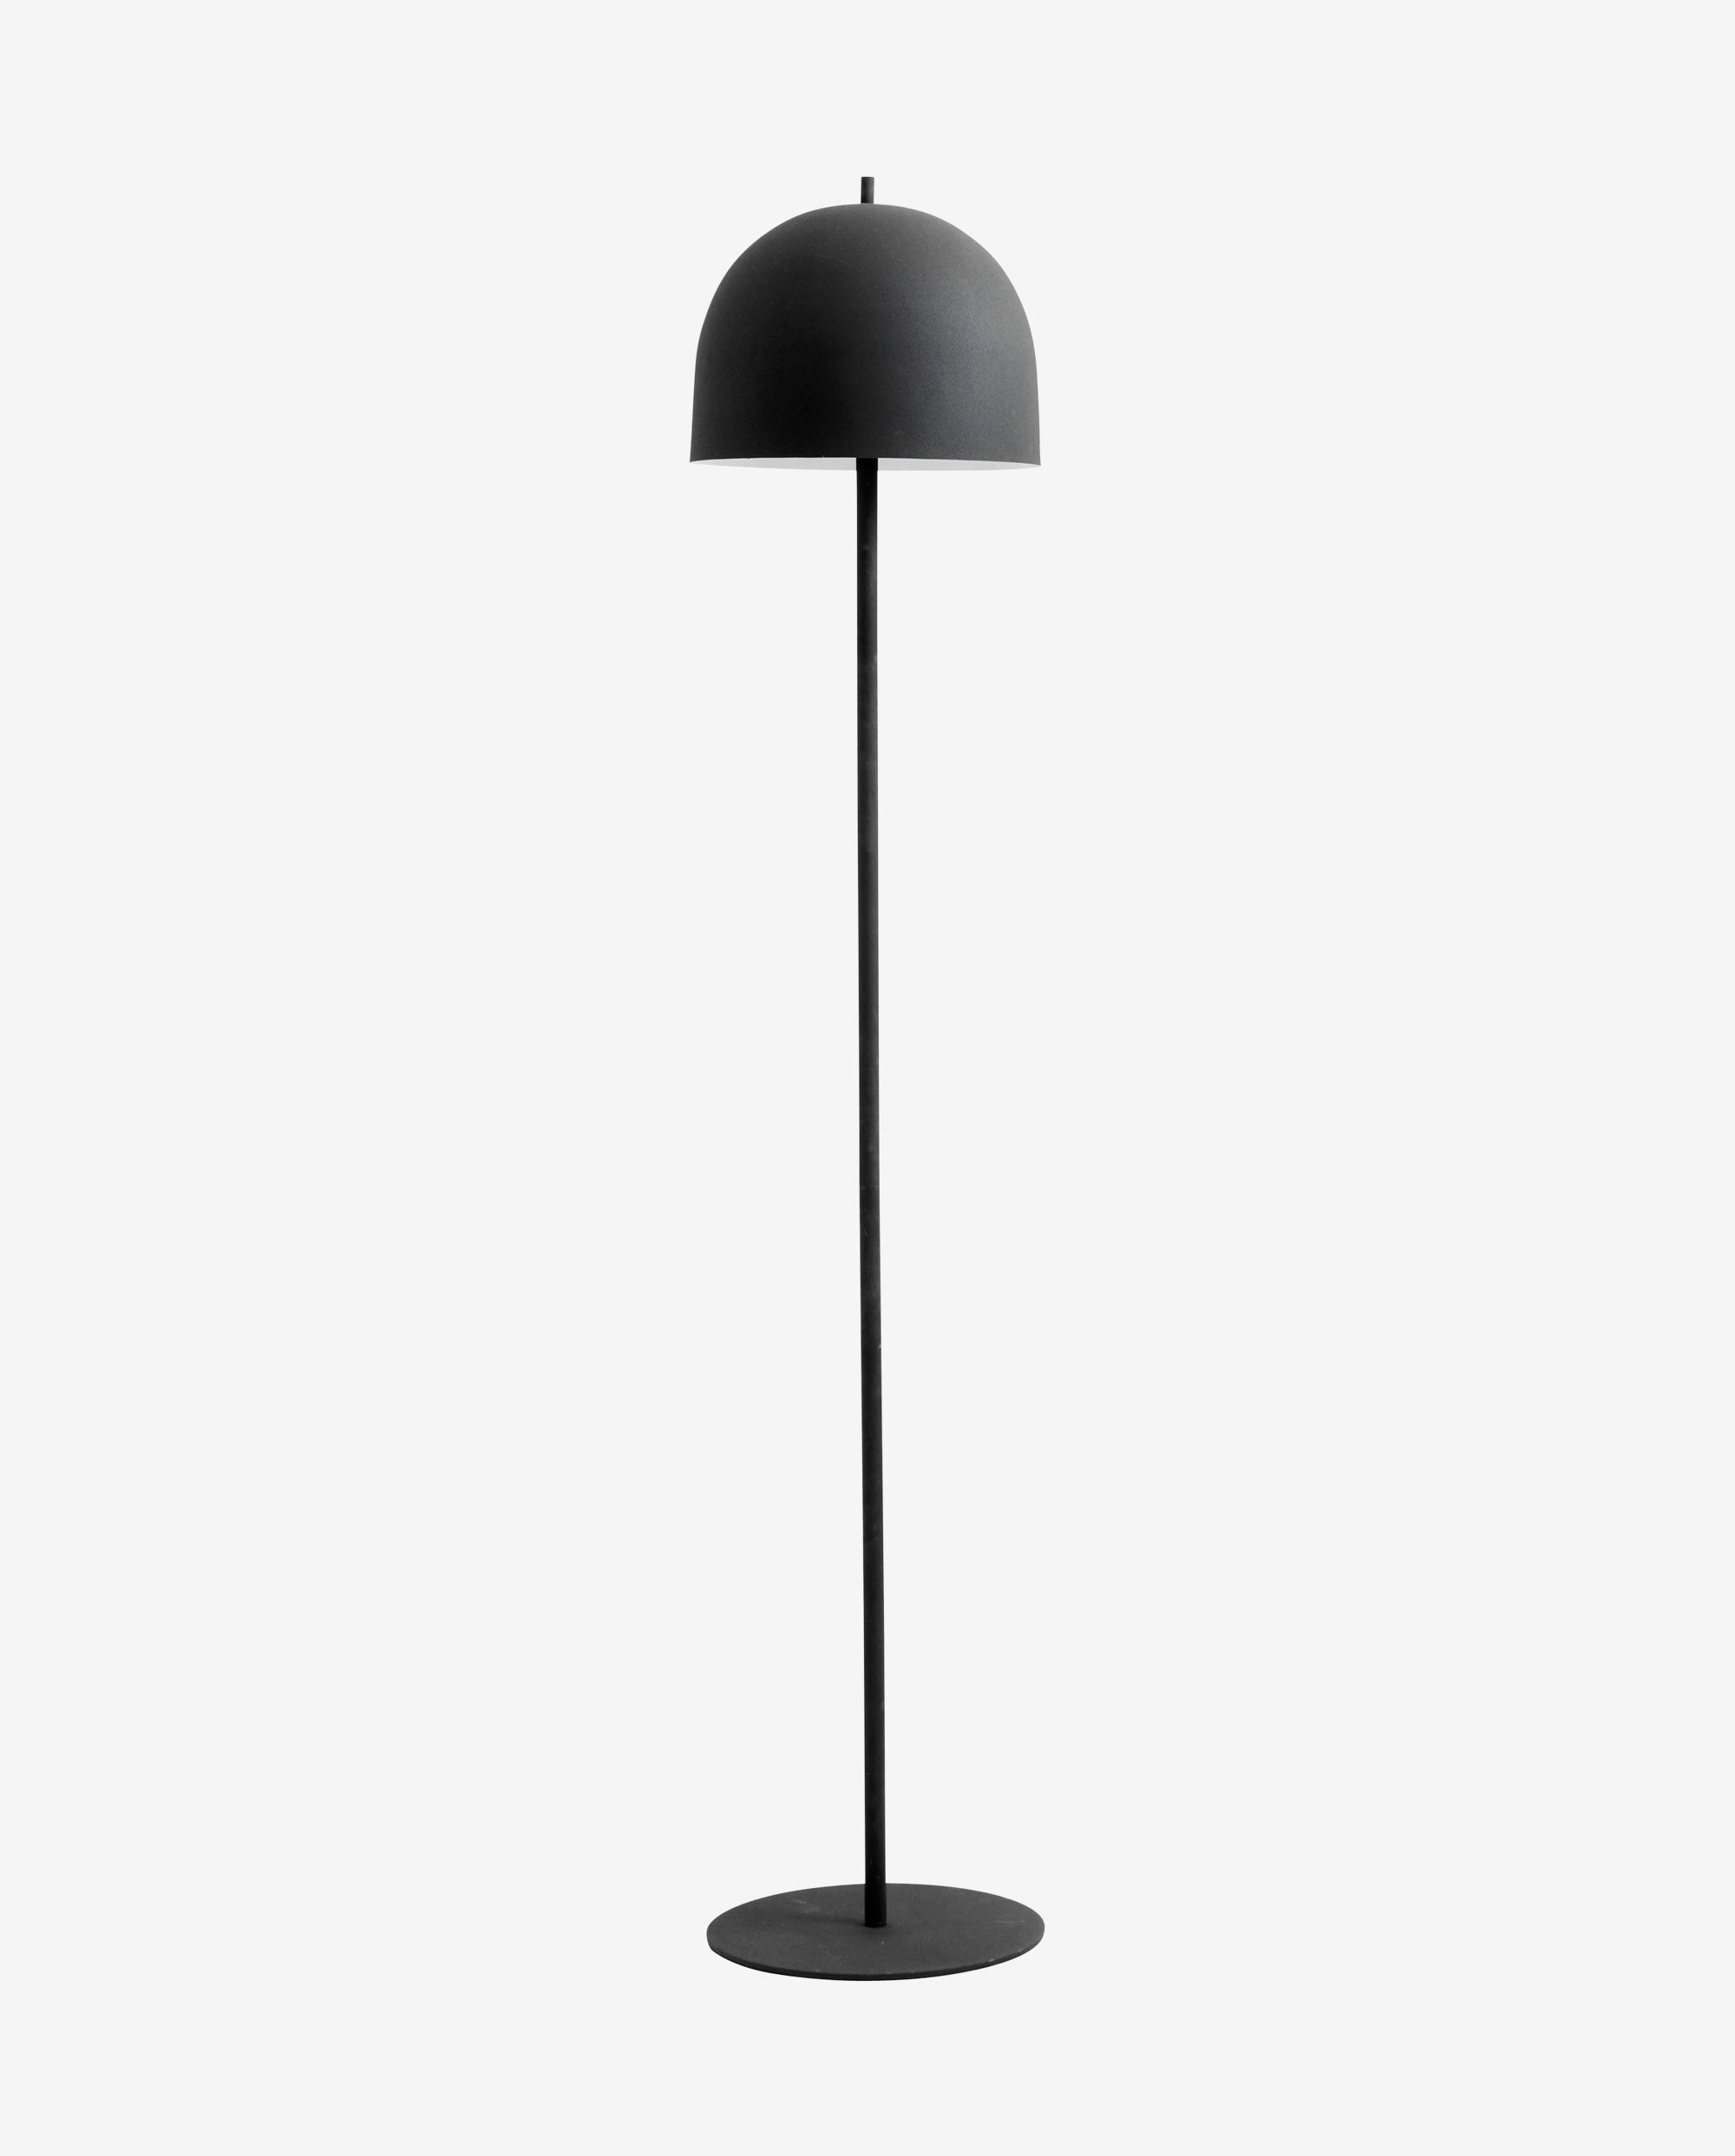 Die Stehlampe "GLOW" in mattem Schwarz ist eine zeitlose Beleuchtungslösung aus Eisen mit einem eleganten Design und einem edlen Finish, das sich nahtlos in jede Raumgestaltung einfügt